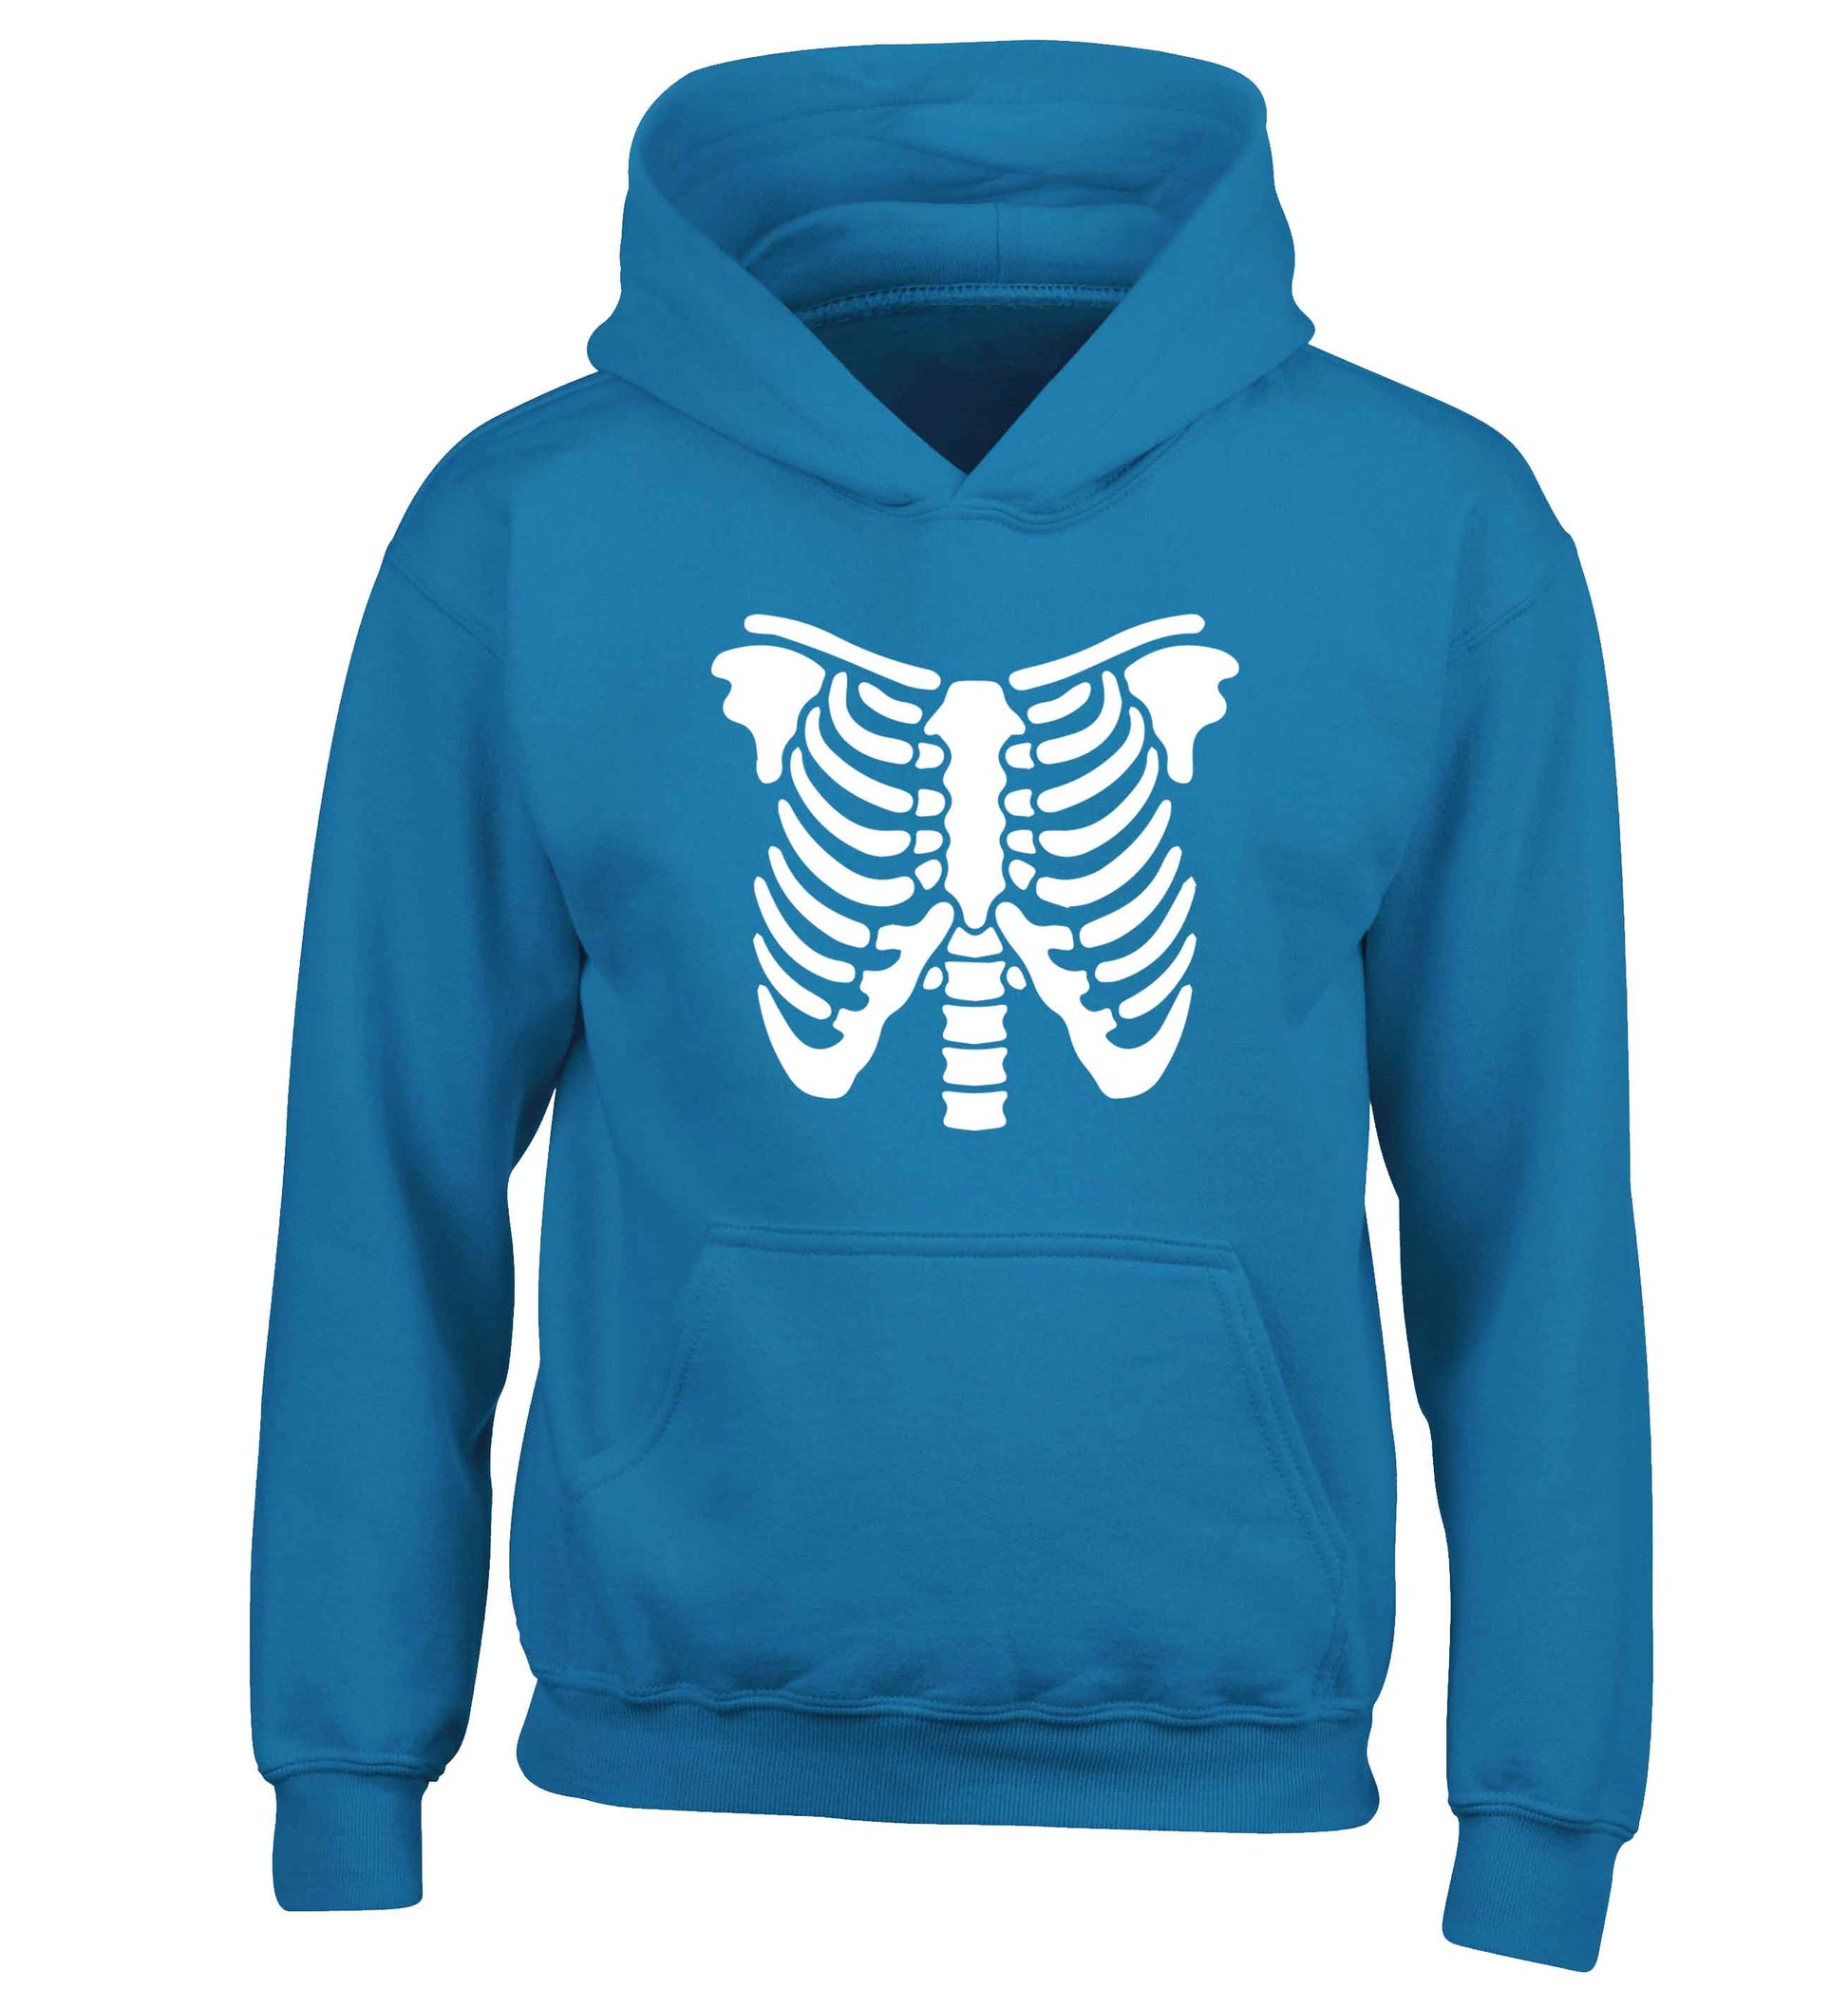 Skeleton ribcage children's blue hoodie 12-13 Years